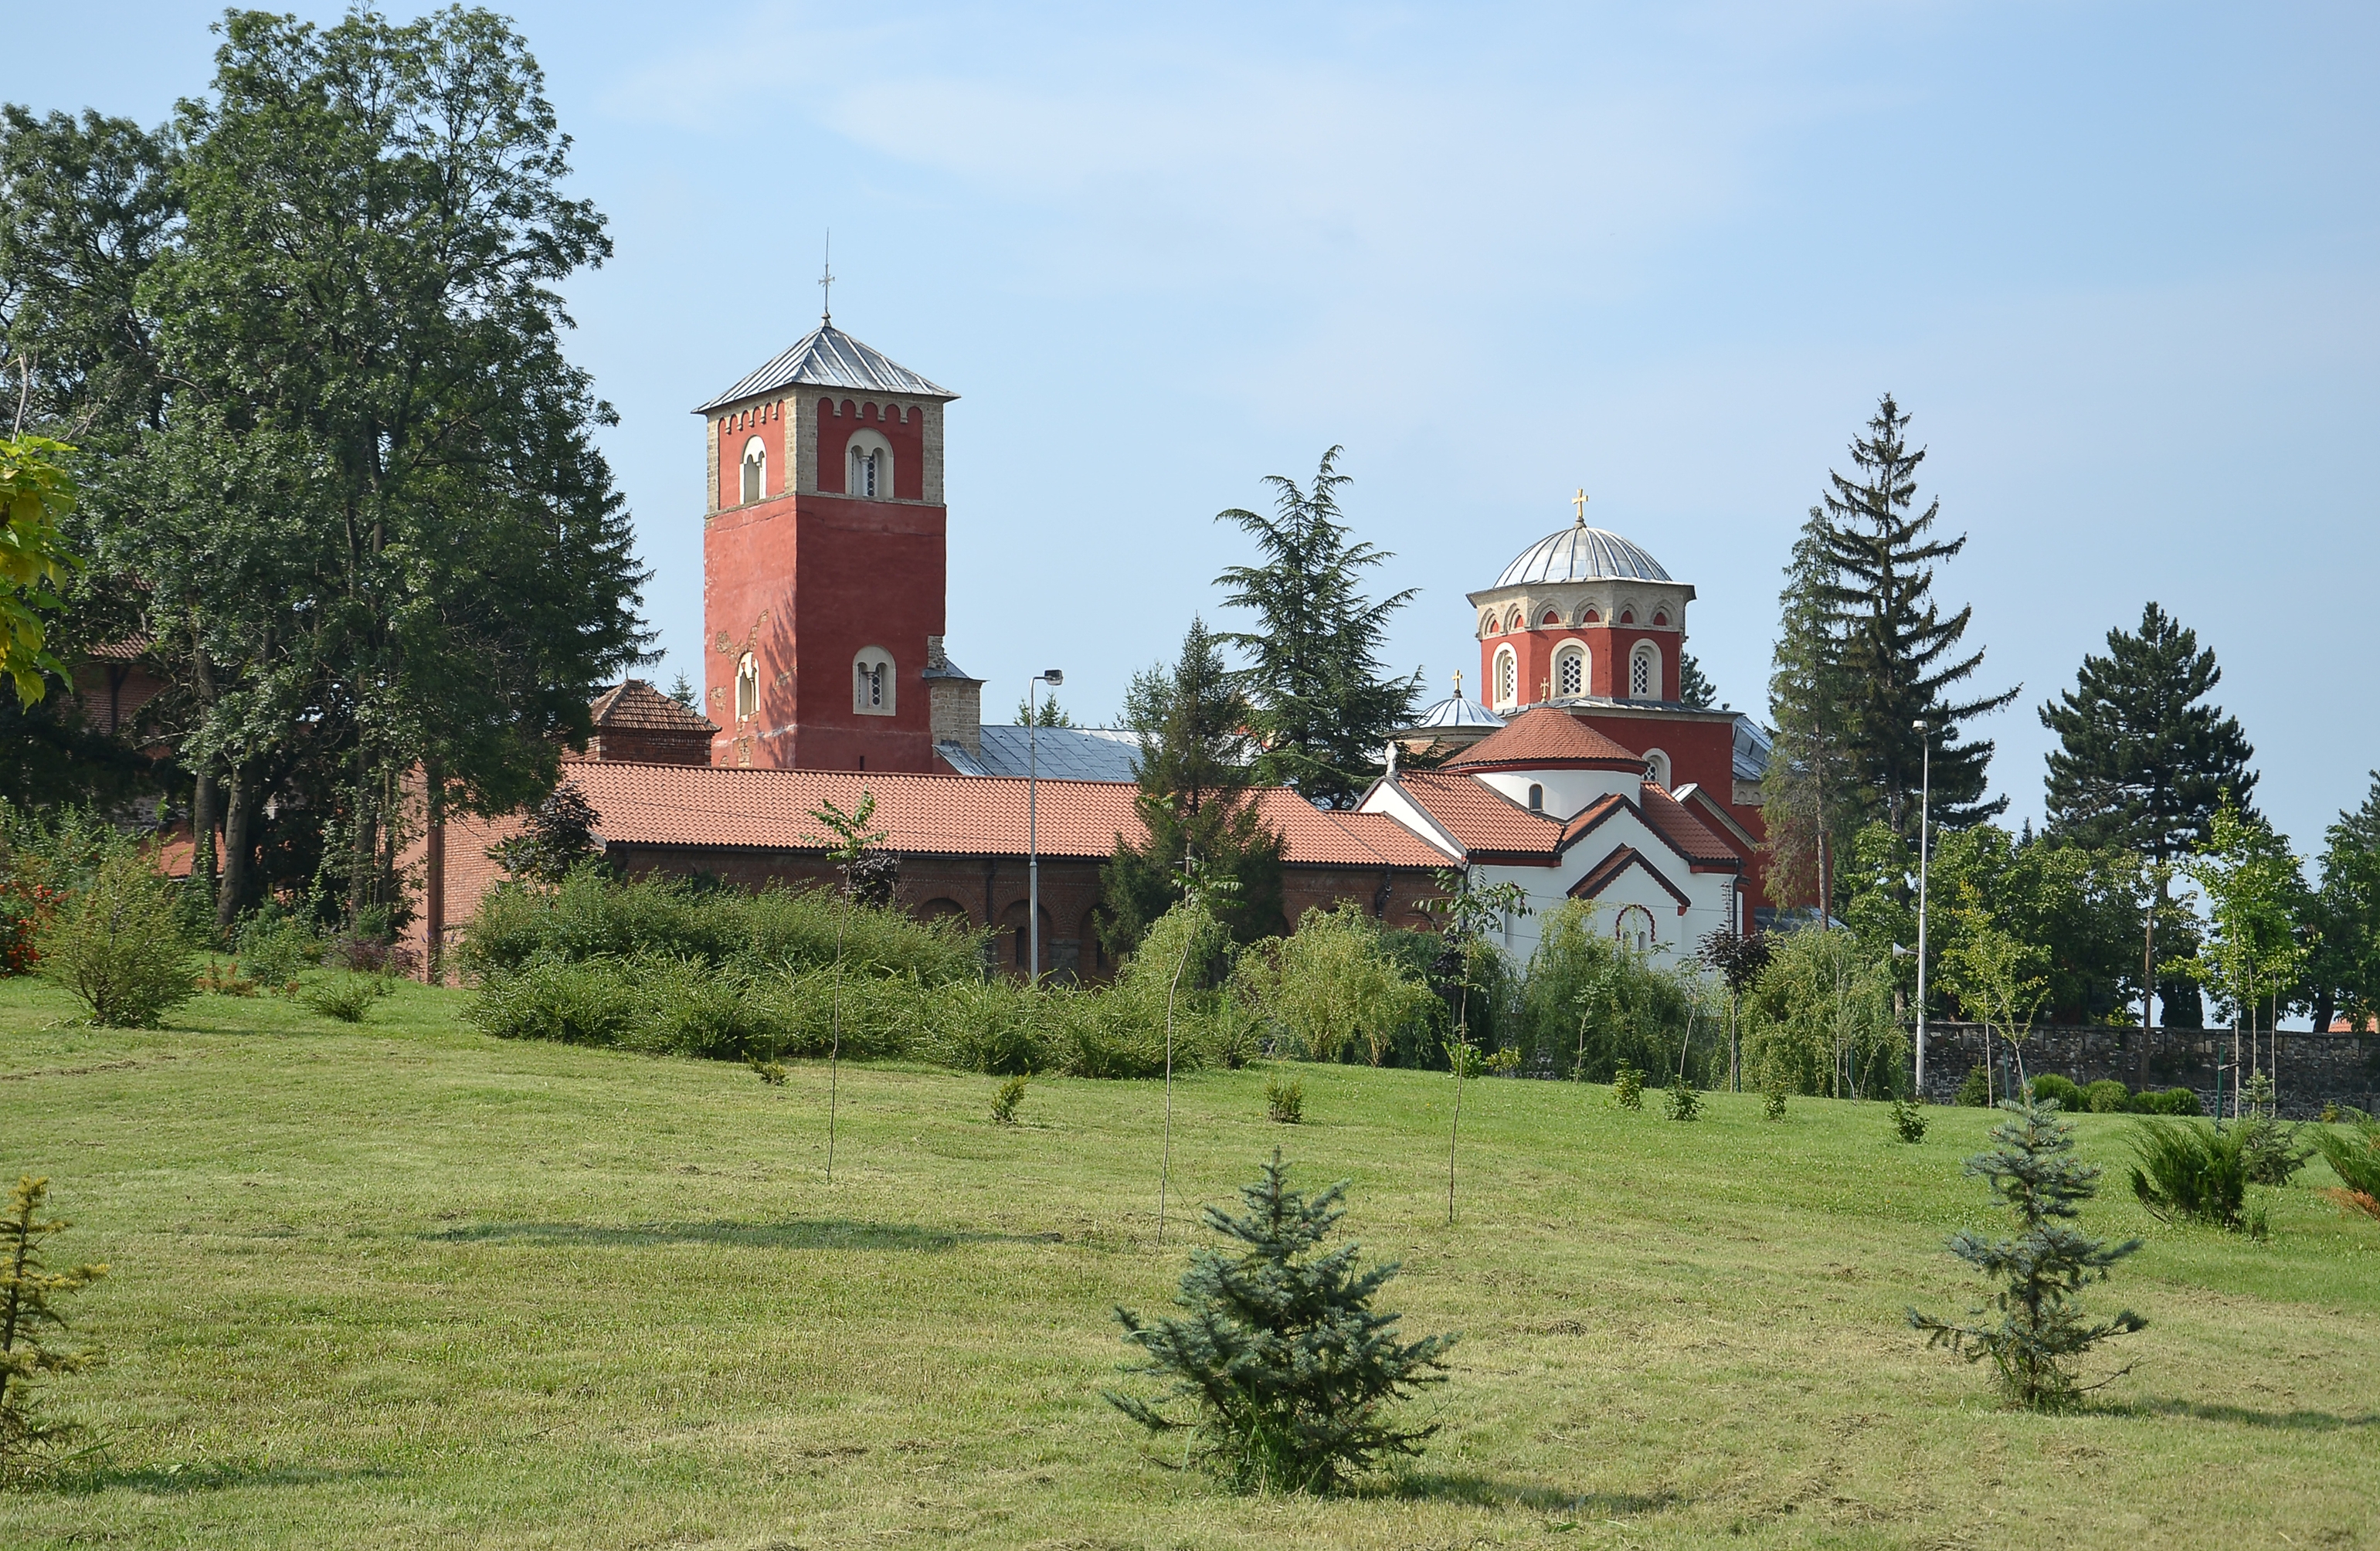 Manastir Žiča (by Pudelek)